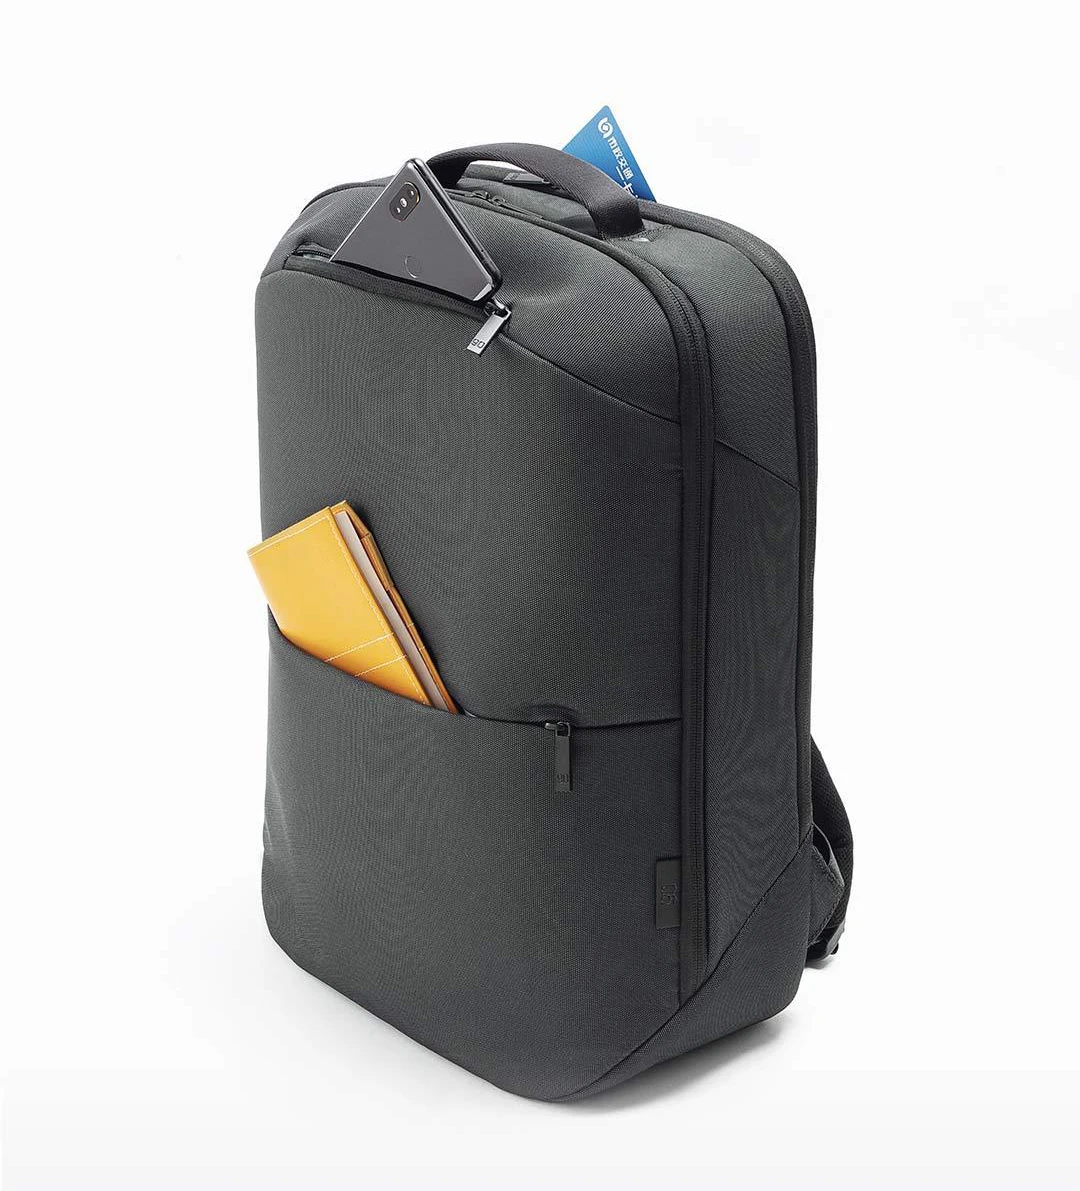 NINETYGO 90Fun бизнес рюкзак для ноутбука 20л Большая вместительная сумка мультизадачный Многофункциональный рюкзак для путешествий, работы, школы для мужчин и женщин